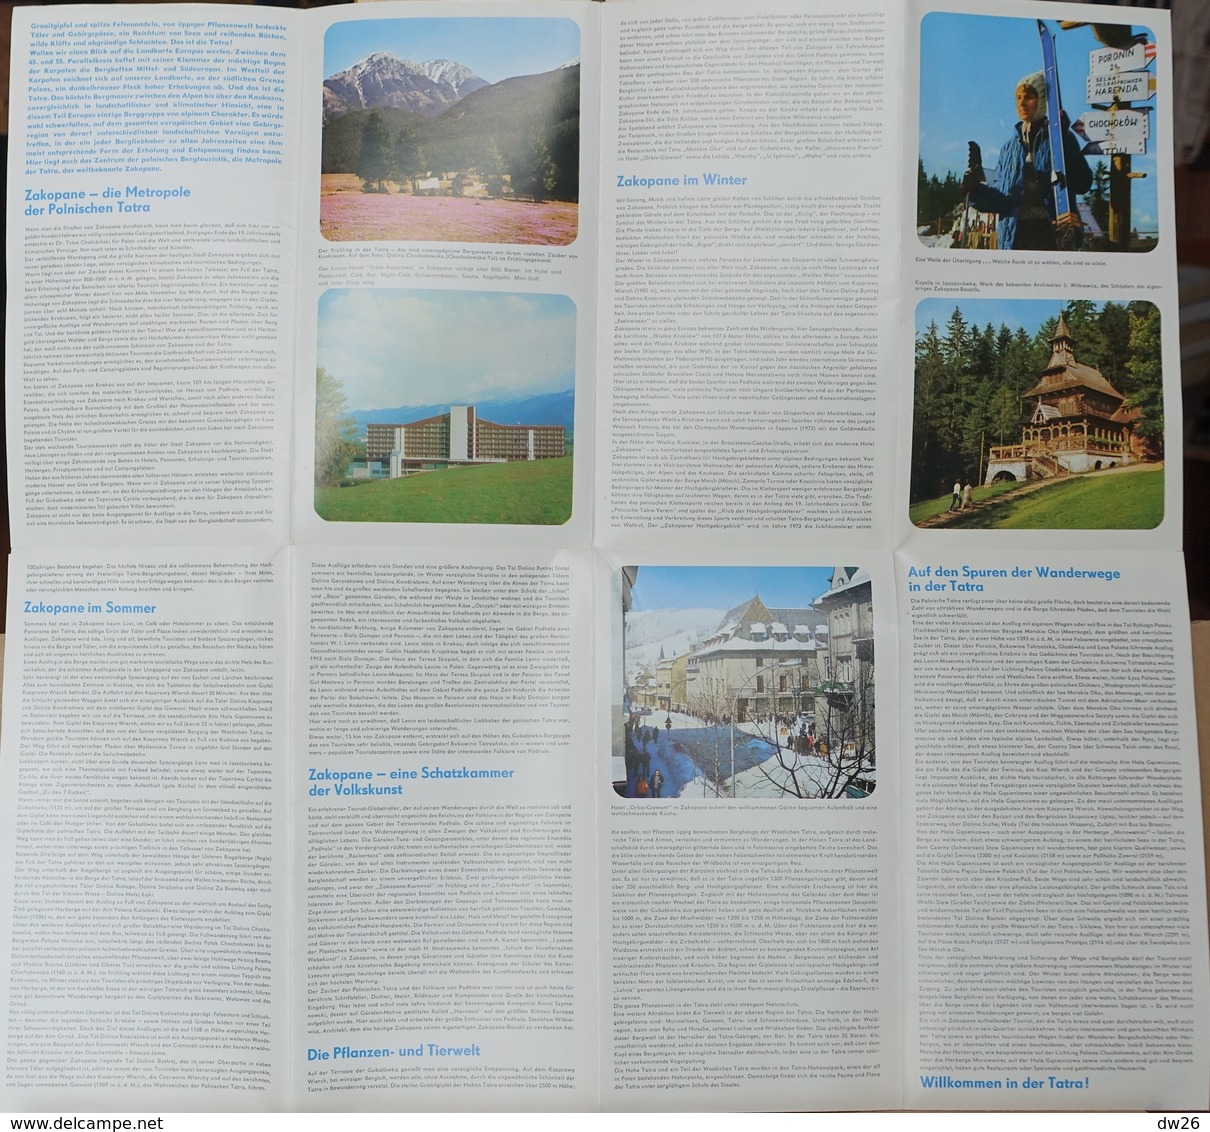 Dépliant Touristique De Pologne - Station De Ski (ośrodek Narciarski W Polsce) Polen Tatra, Zakopane - Tourism Brochures